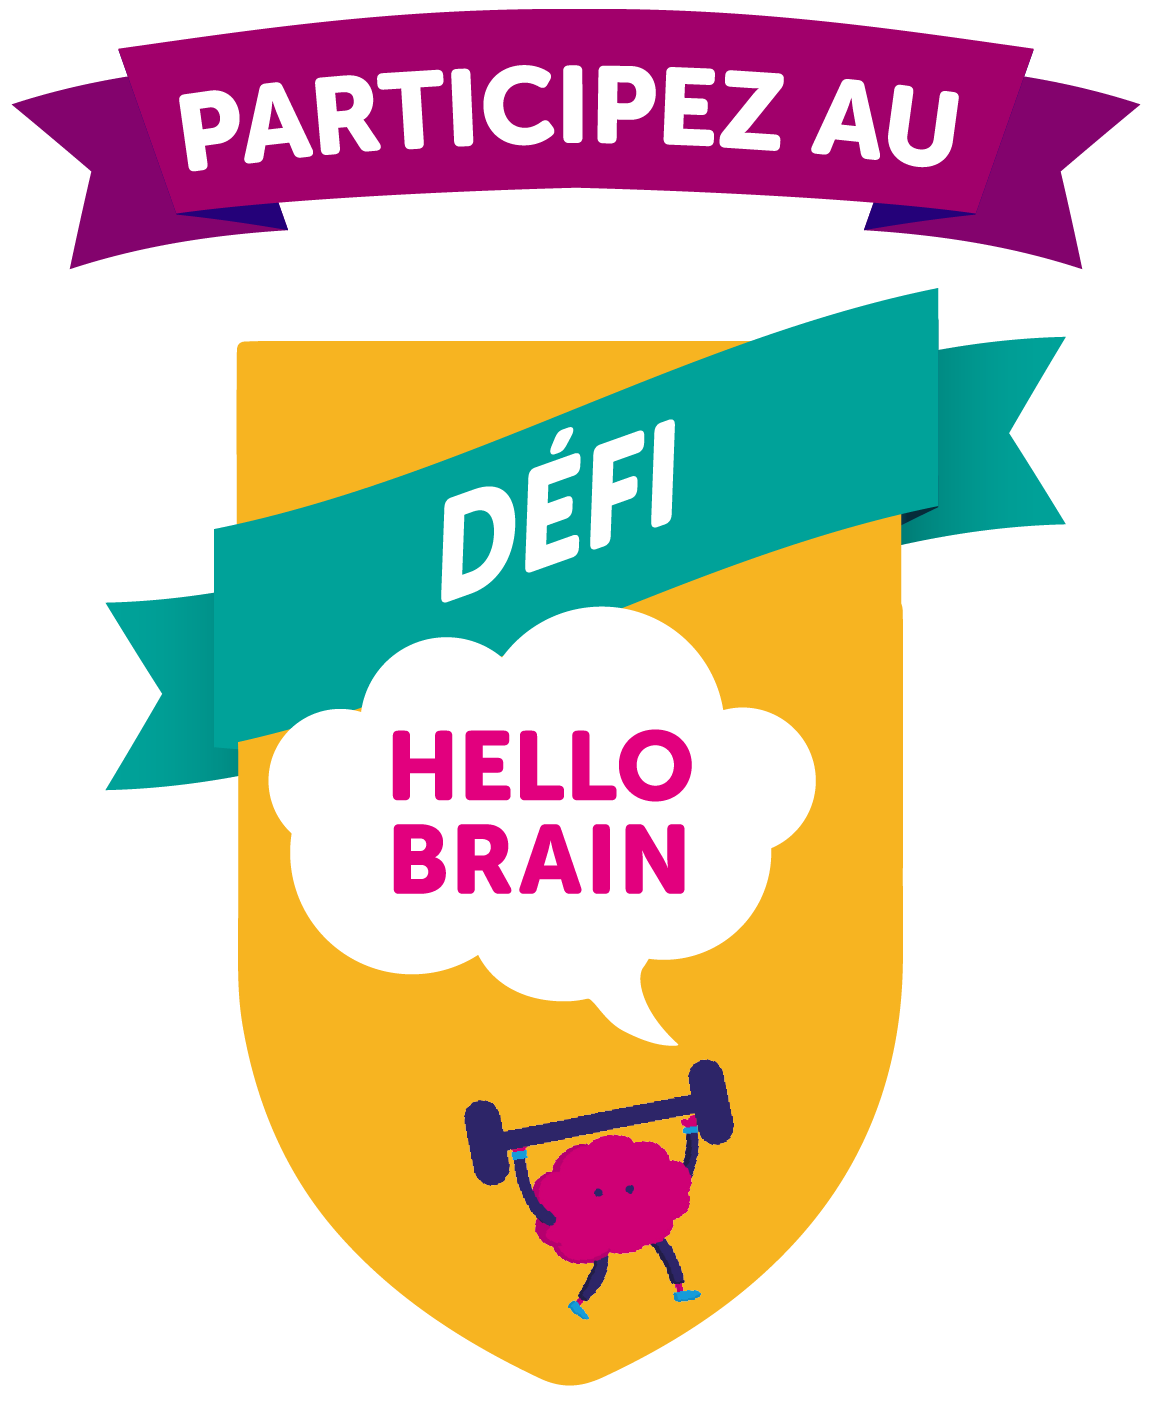 Participez au défi Hello Brain.